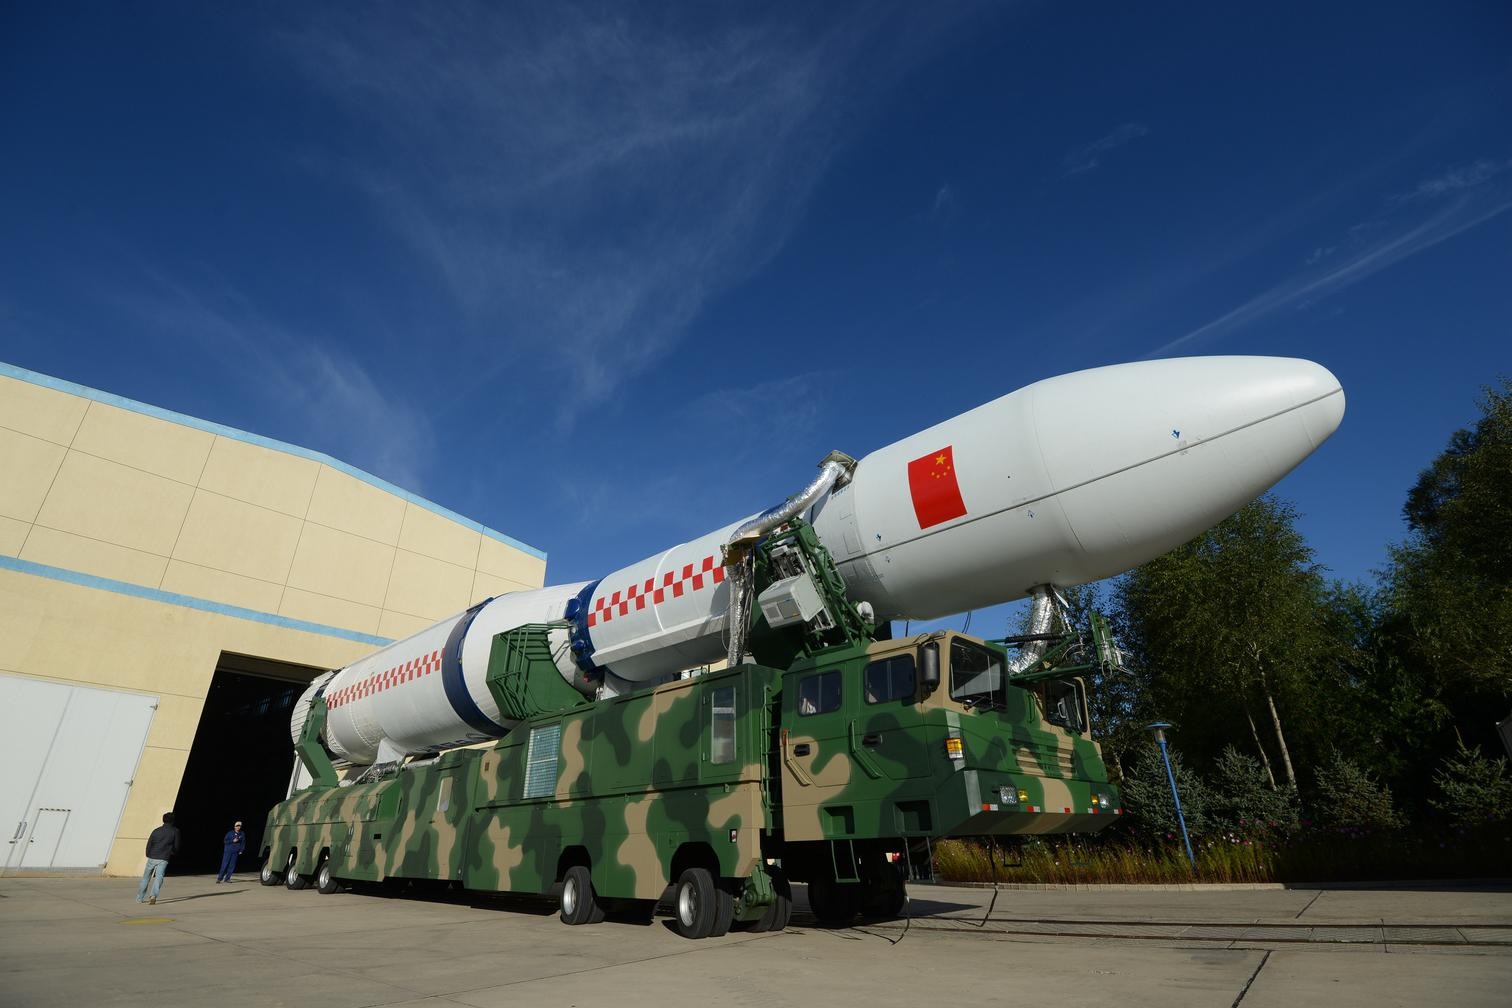 俄专家:长征6号造价便宜 对俄火箭有严重威胁